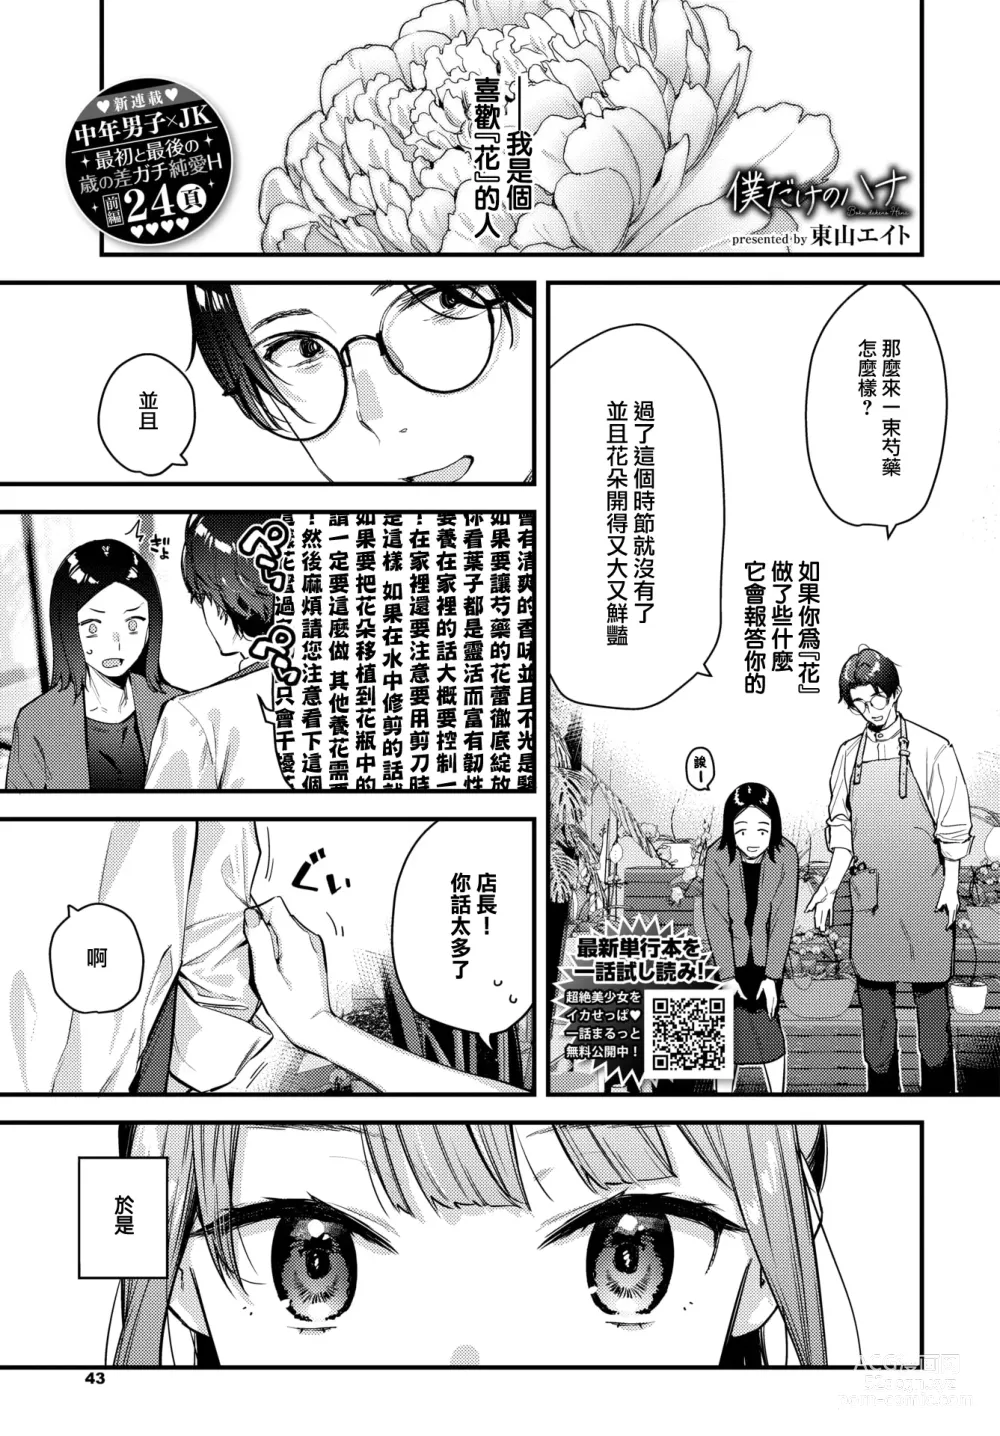 Page 2 of manga Bokudake no Hana ~Jouhen~